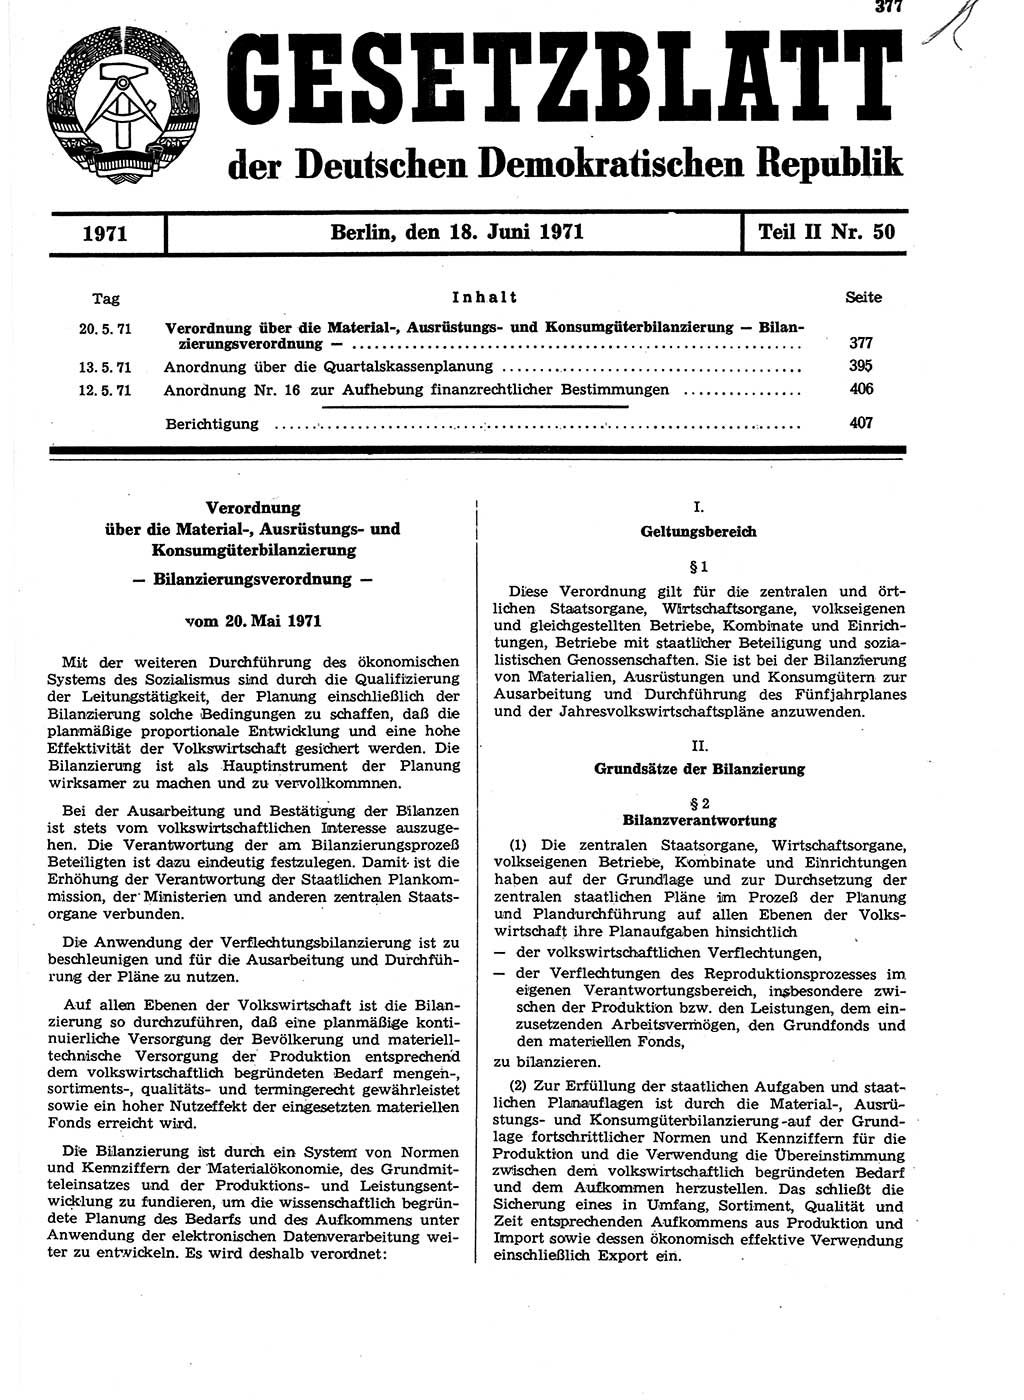 Gesetzblatt (GBl.) der Deutschen Demokratischen Republik (DDR) Teil ⅠⅠ 1971, Seite 377 (GBl. DDR ⅠⅠ 1971, S. 377)